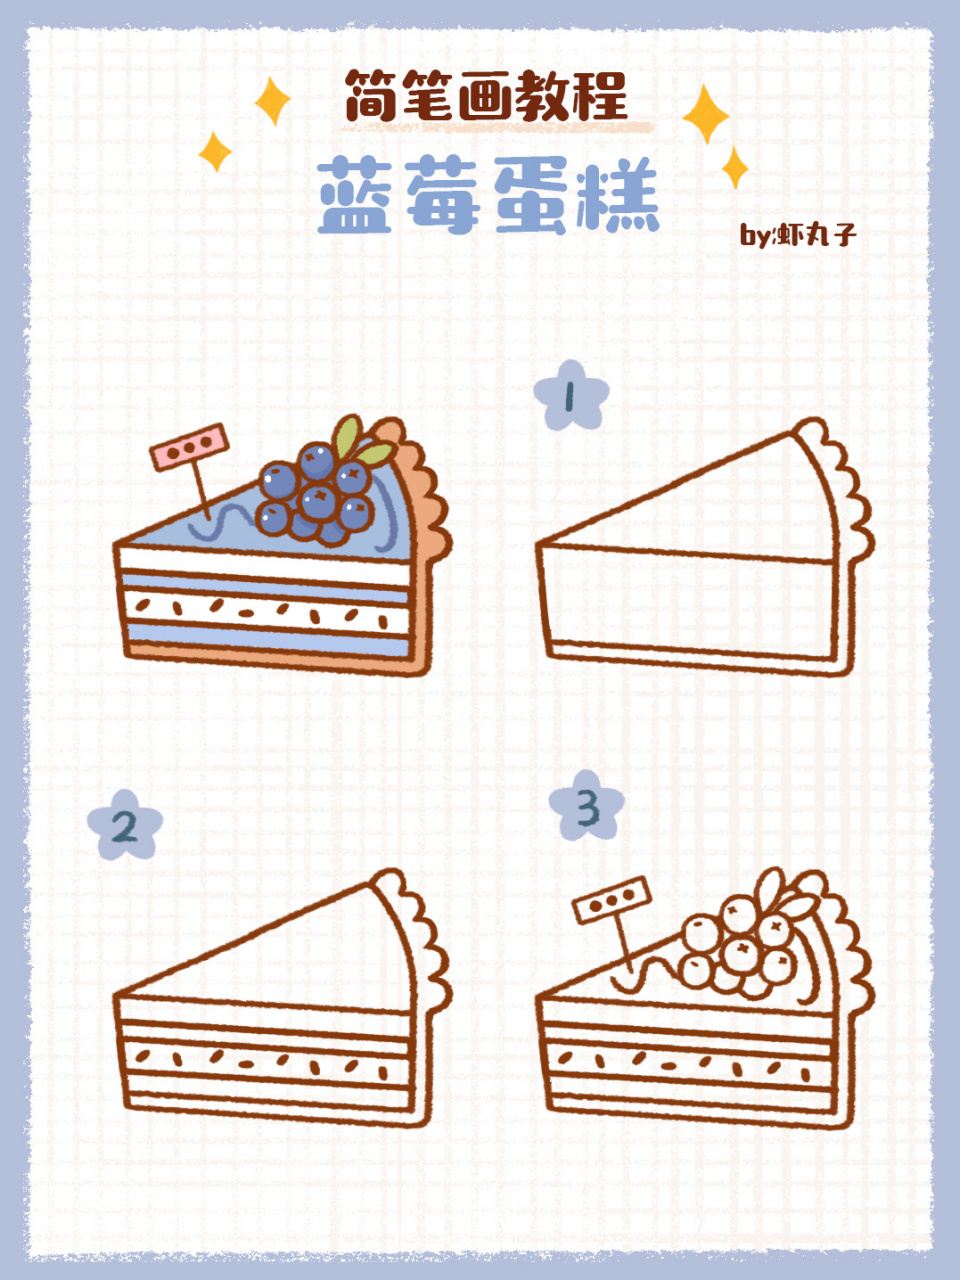 蓝莓蛋糕怎么画简笔画图片